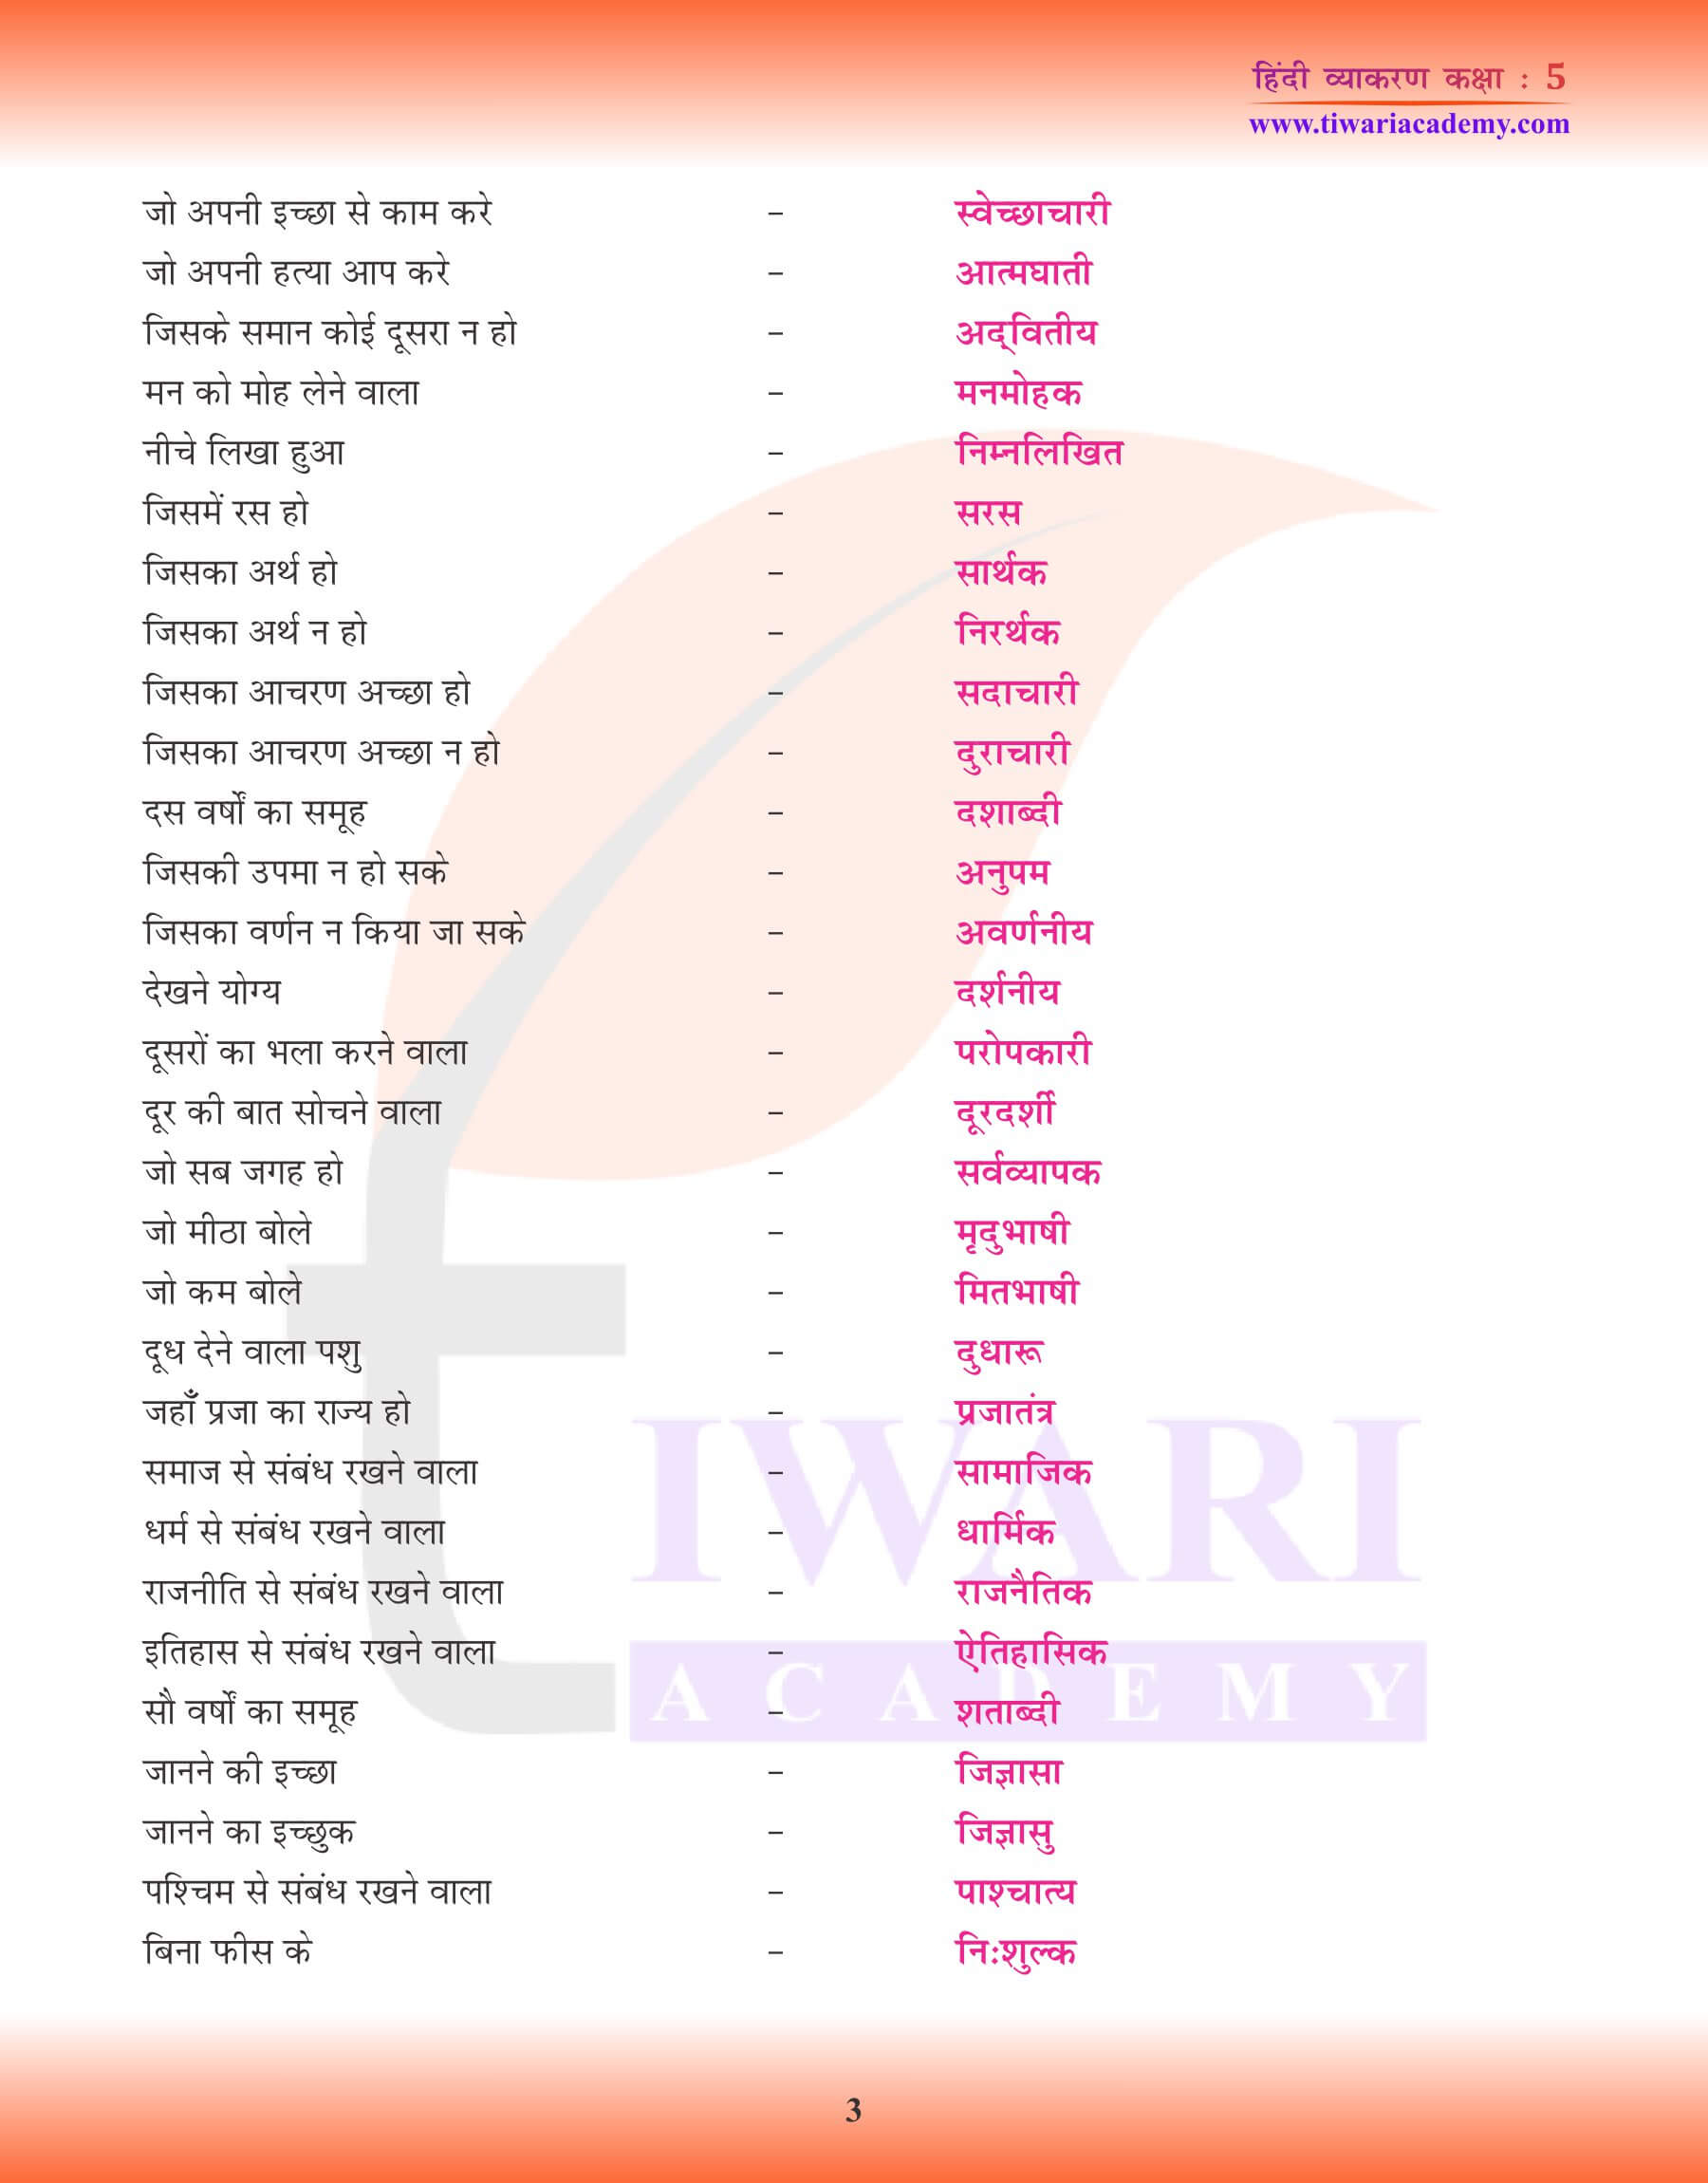 हिंदी व्याकरण में अनेक शब्दों के लिए एक शब्द अभ्यास प्रश्न